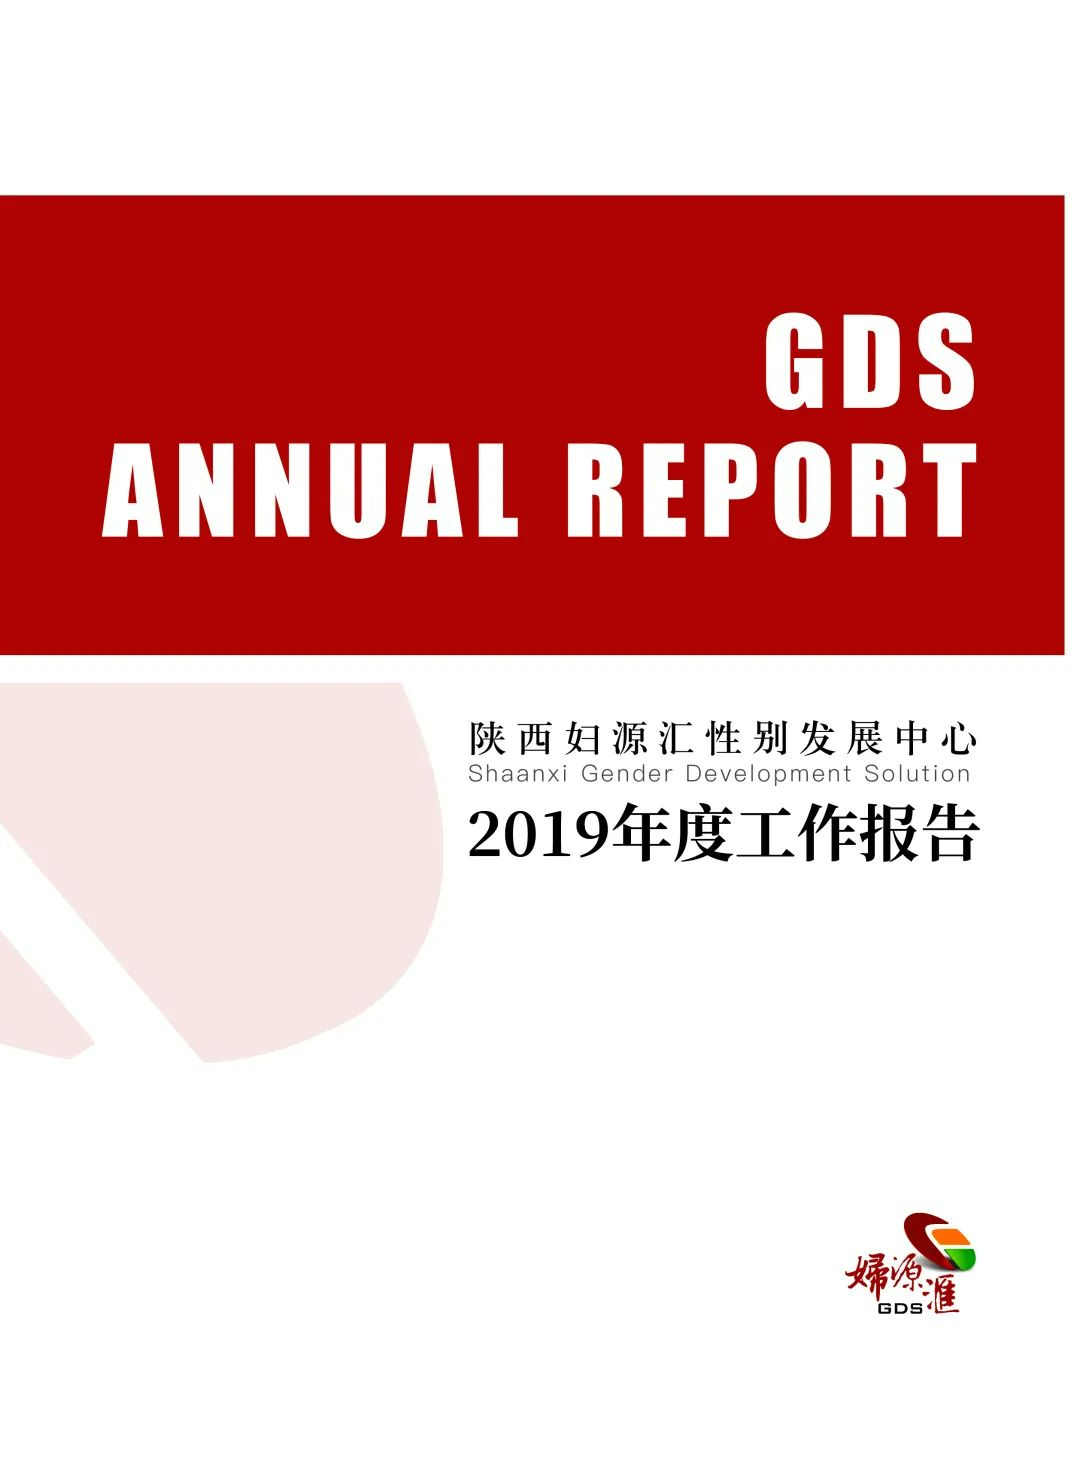 2019年度工作报告